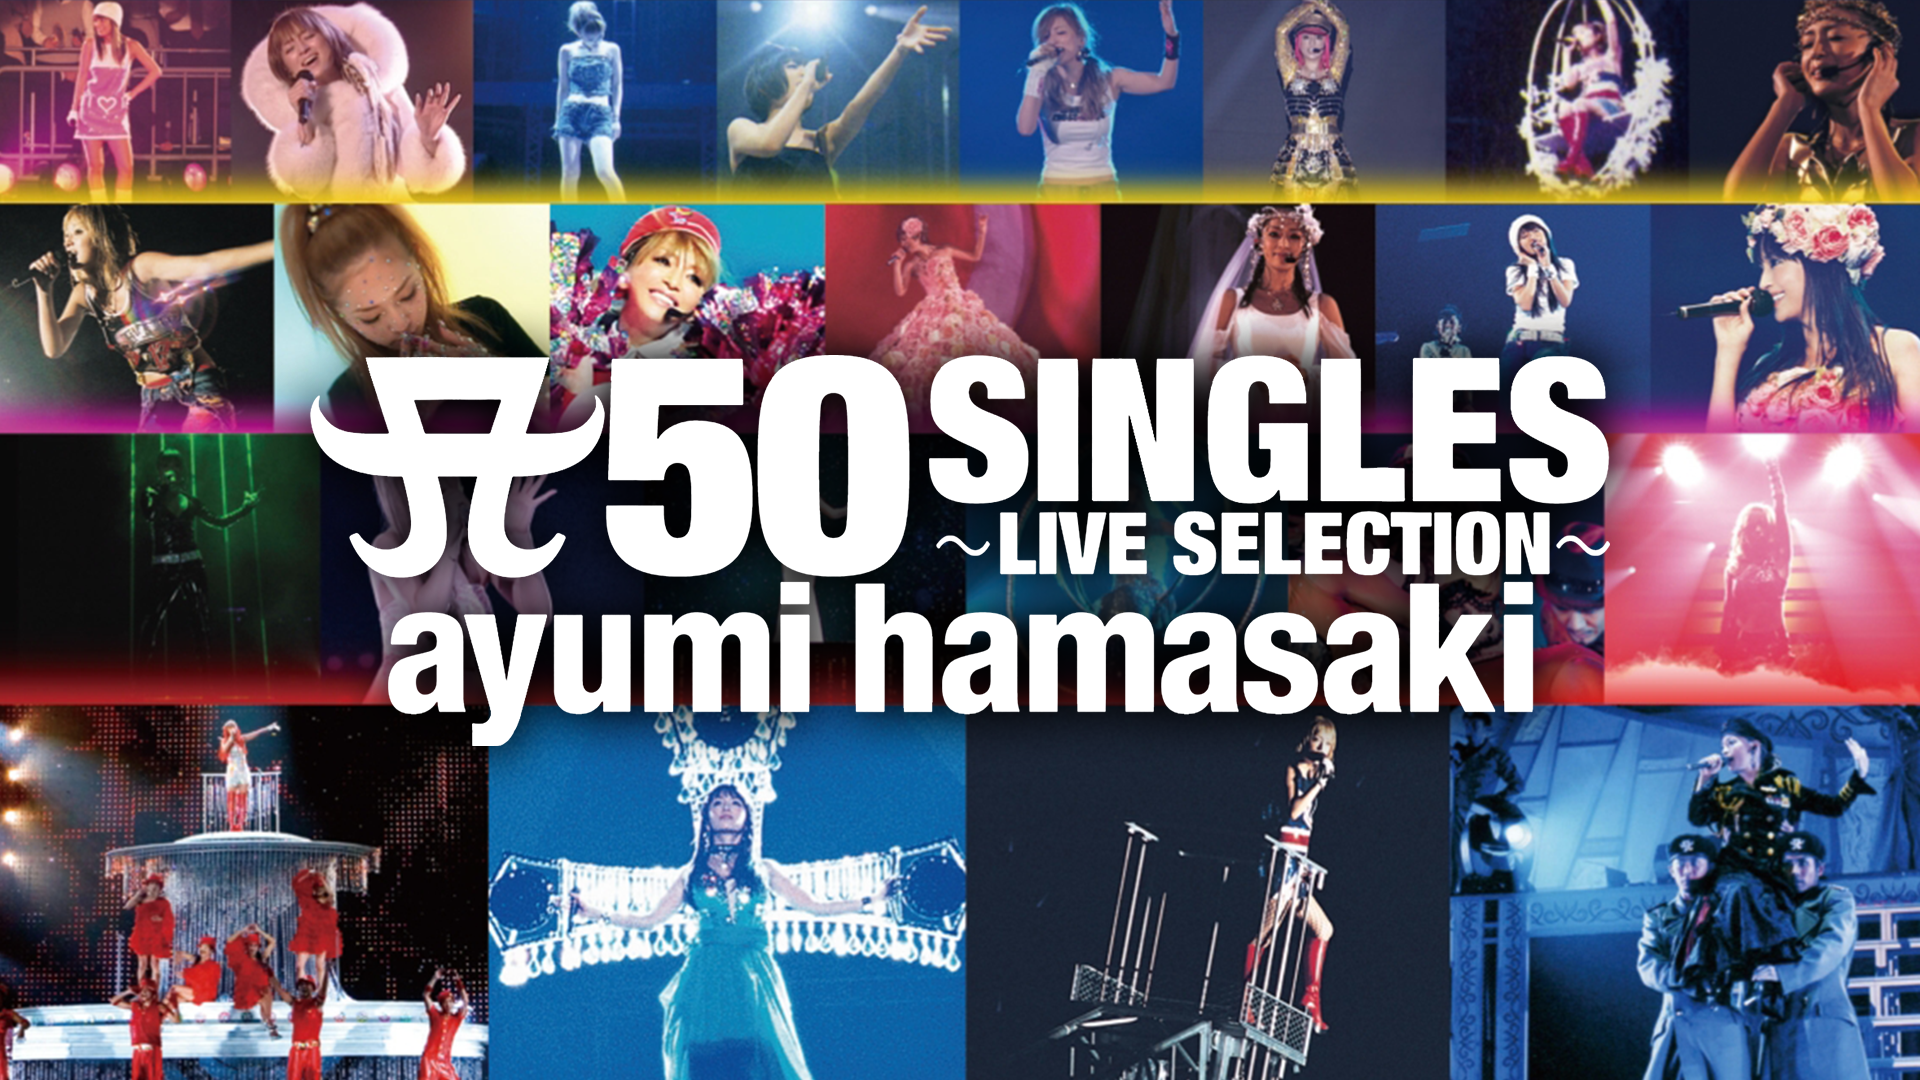 ayumi hamasaki:A 50 SINGLES ～LIVE SELECTION～(音楽・アイドル / 2000) - 動画配信 |  U-NEXT 31日間無料トライアル